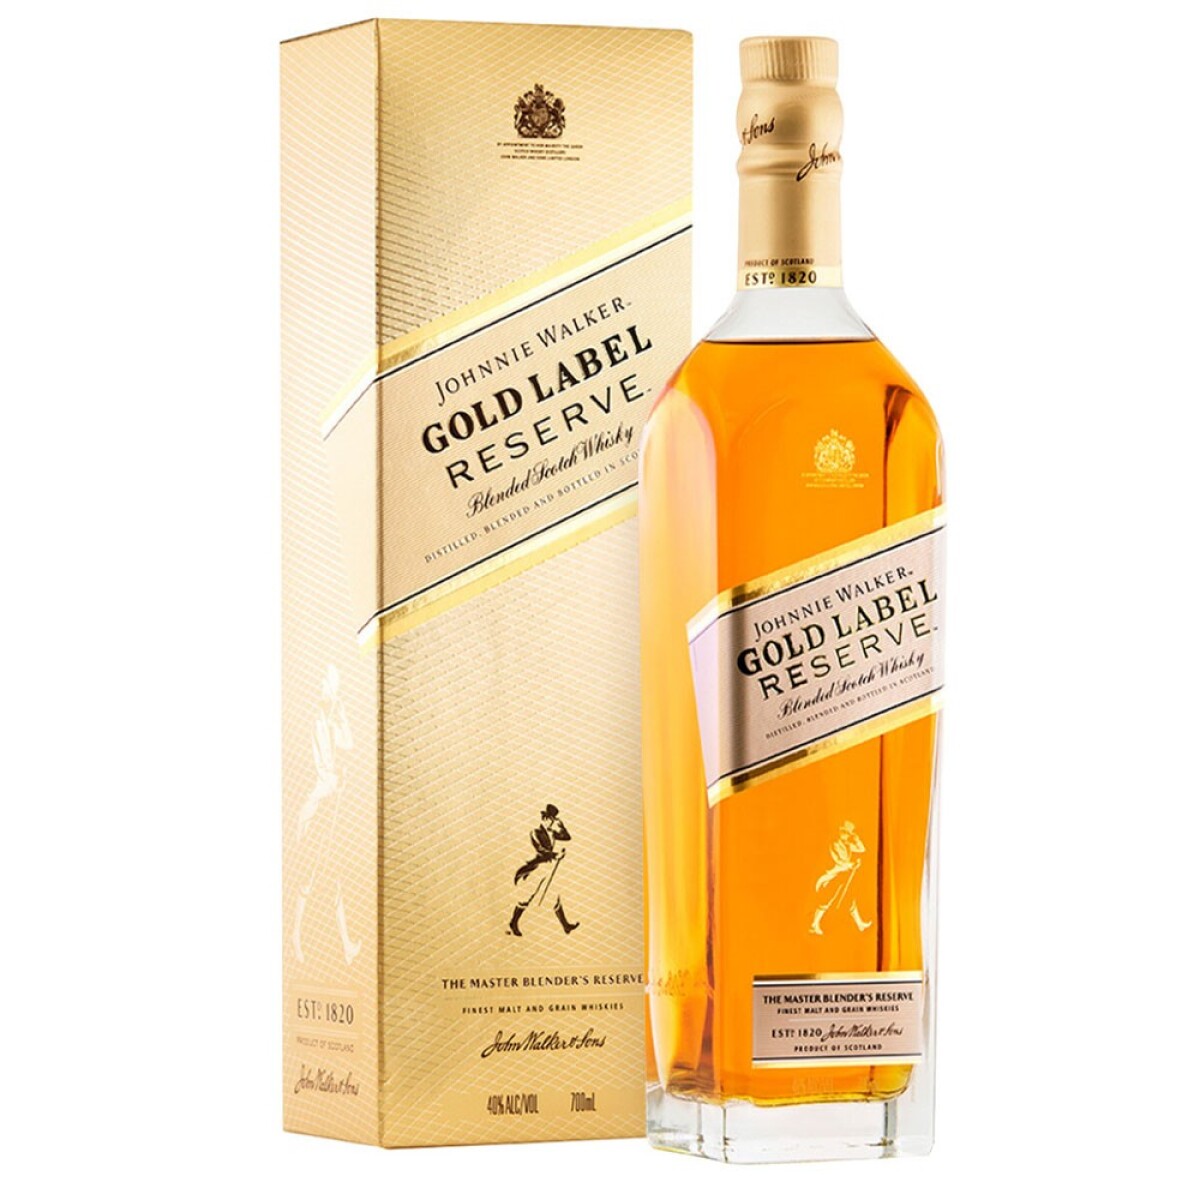 Whisky Johnnie Walker Gold Label Reserve con Estuche - 001 